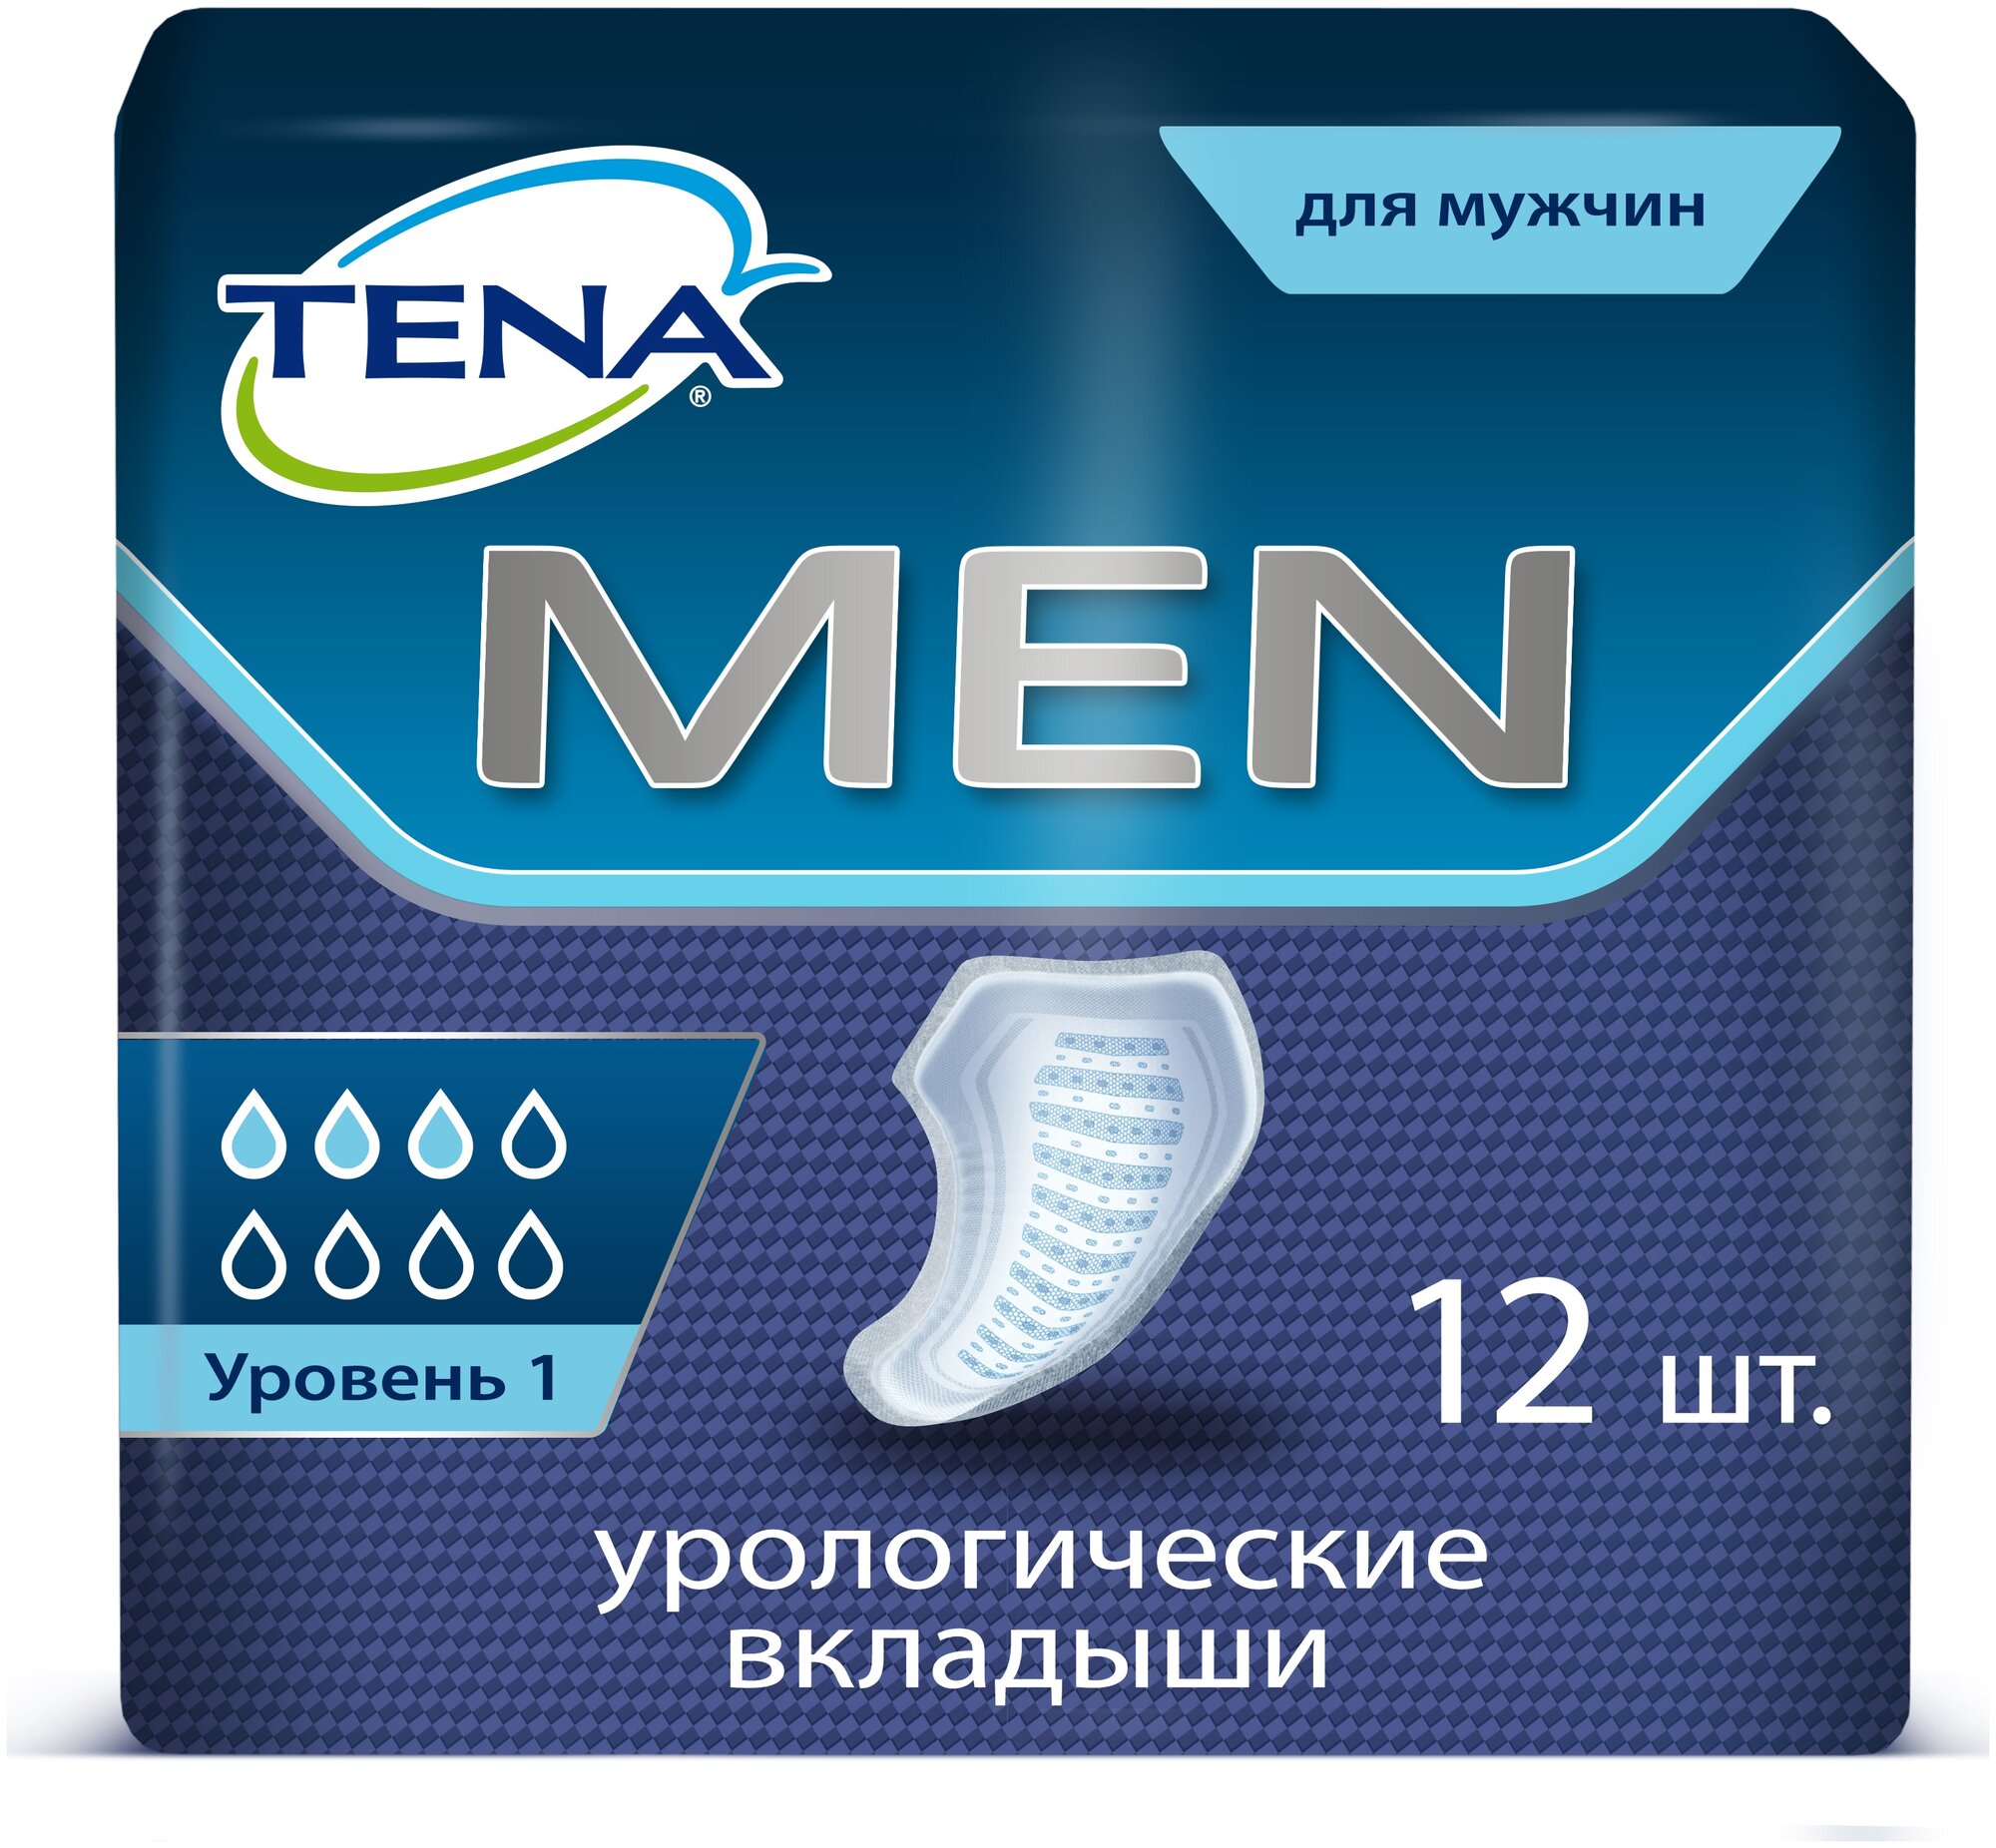 Урологические прокладки TENA Men Level 1 750661 (12 шт.)